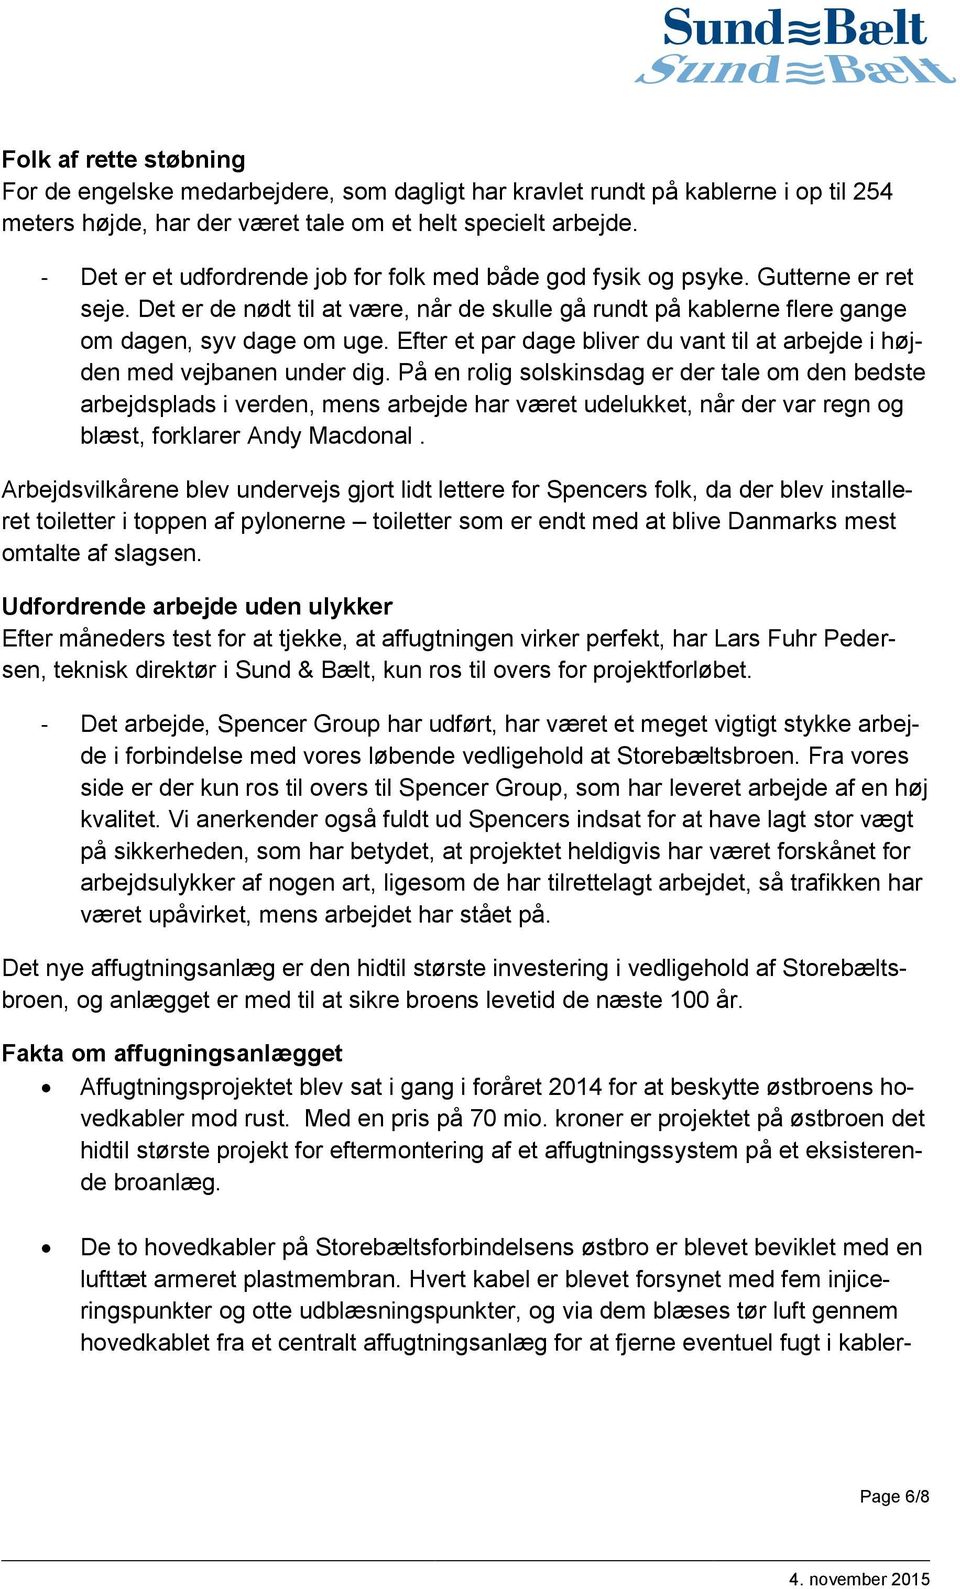 Nyhedsbrev fra Sund & Bælt - PDF Free Download